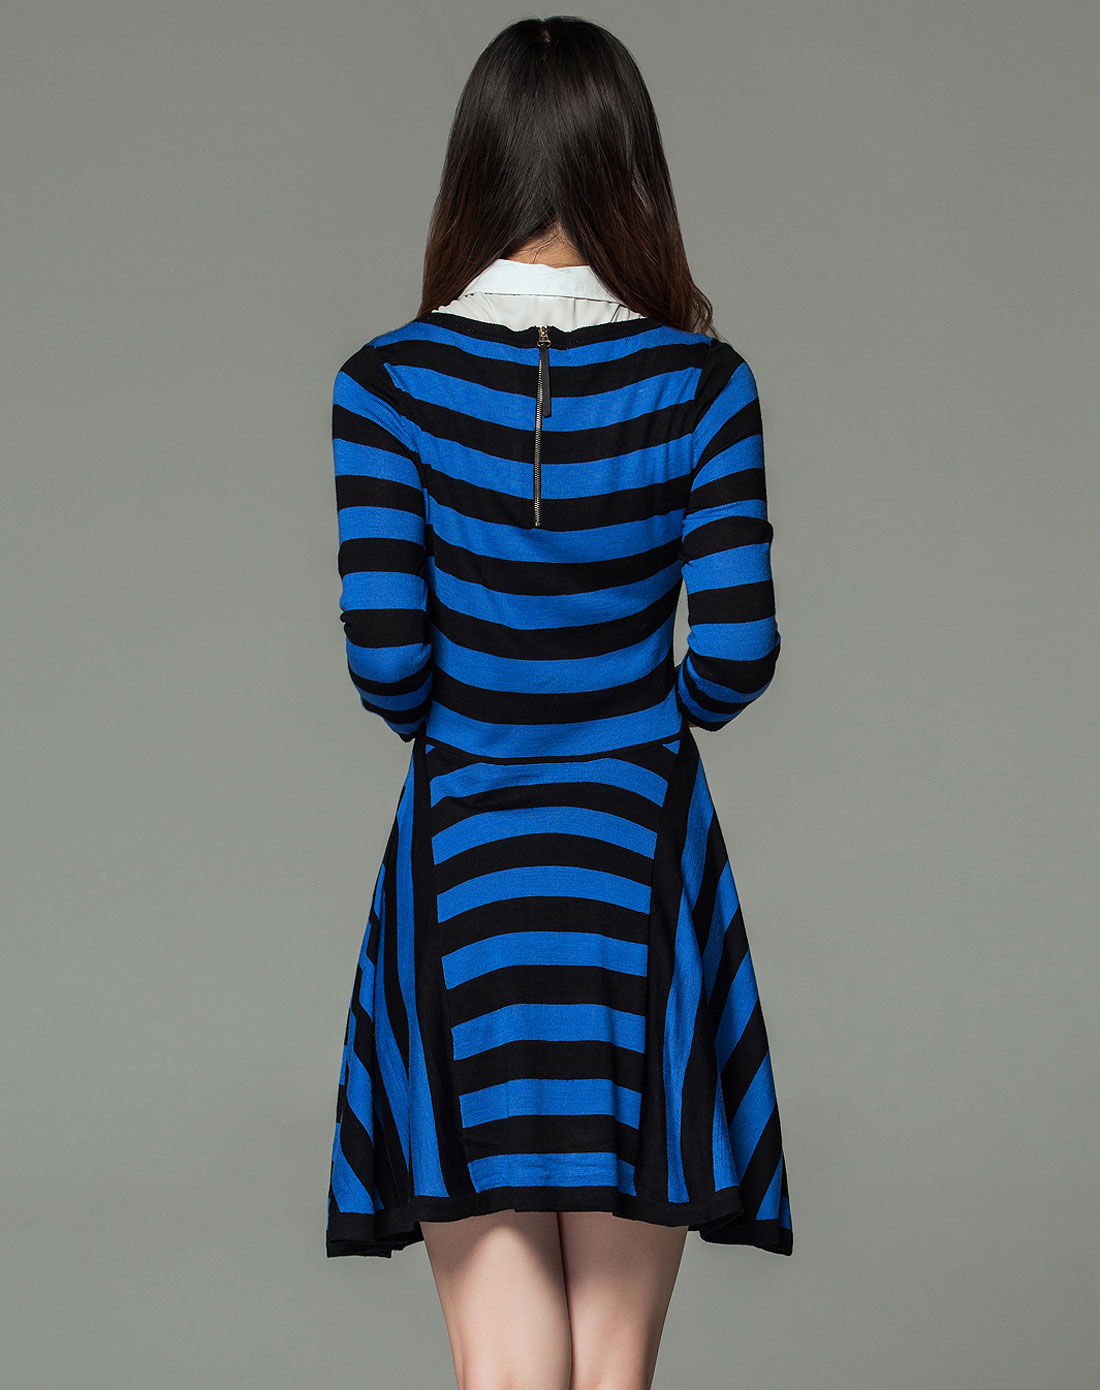 蓝黑色的裙子原图图片